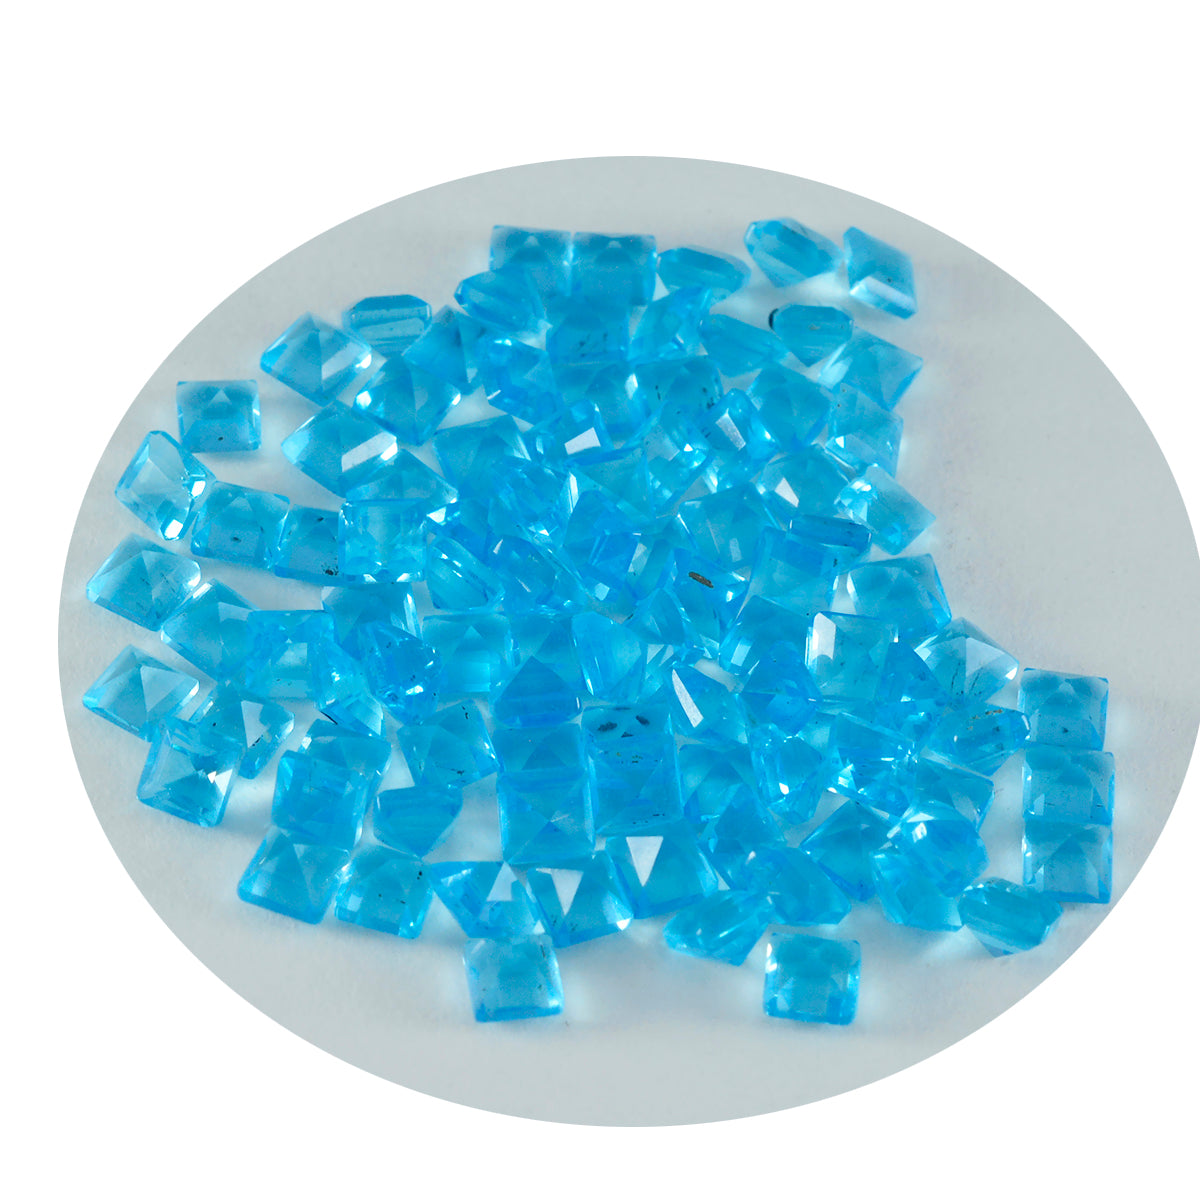 riyogems 1 шт. синий топаз cz граненый 4x4 мм квадратной формы хорошее качество свободный драгоценный камень